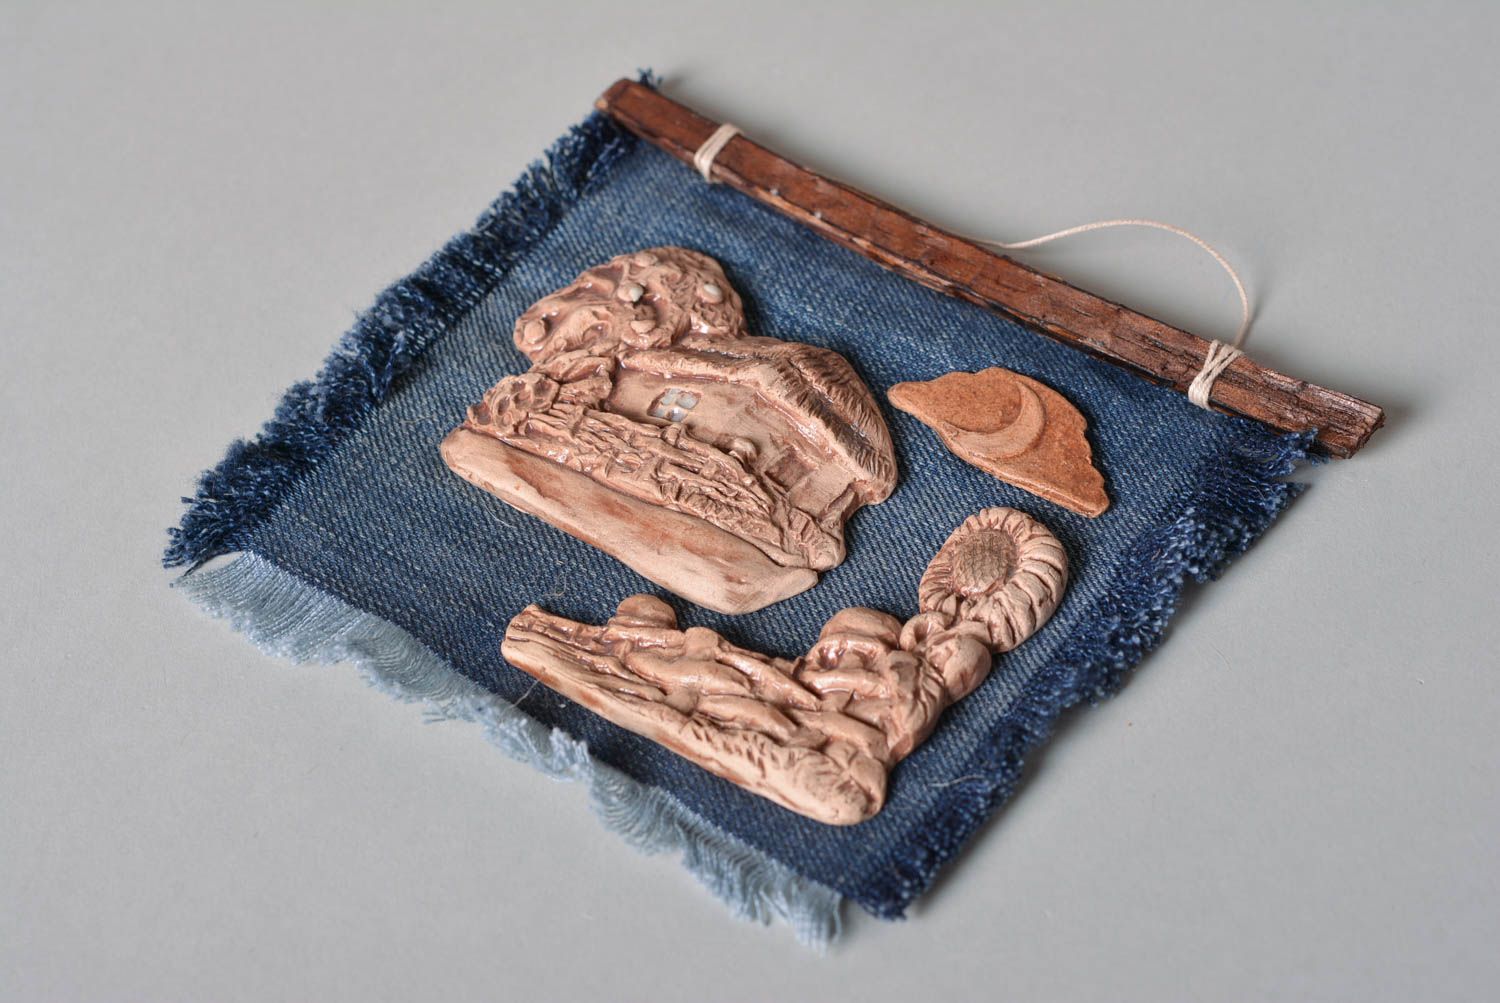 Панно на стену подарок ручной работы авторское панно из глины и джинсовой ткани фото 2